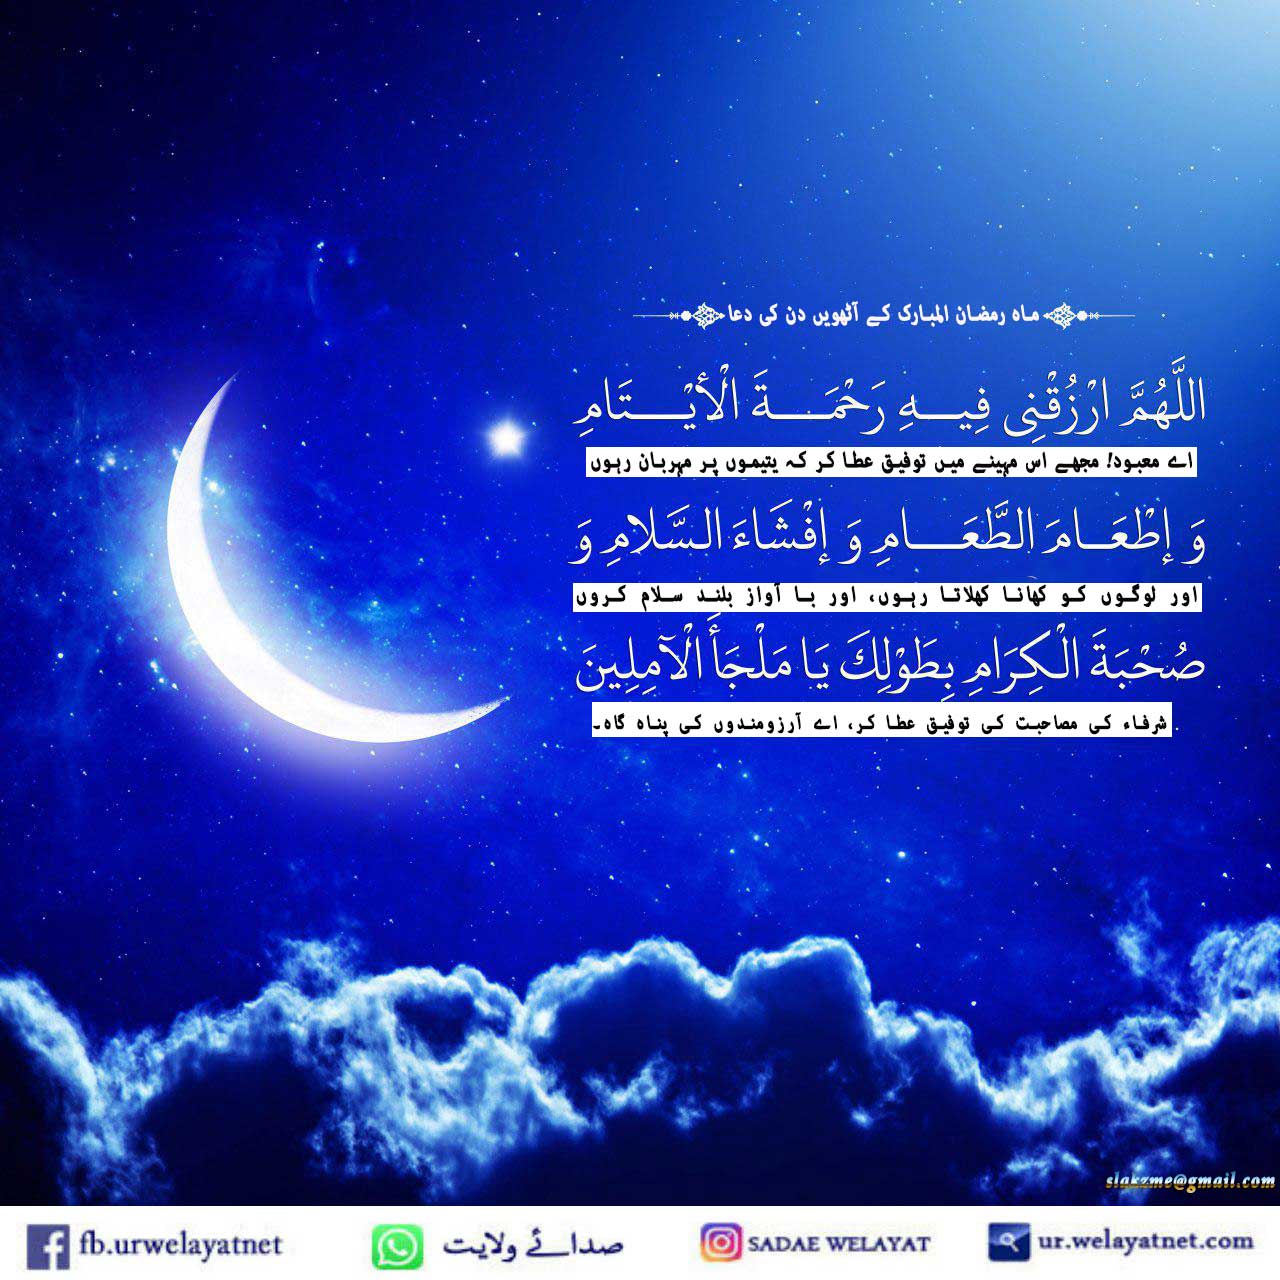 ماہ رمضان المبارک کے آٹھویں دن کی دعا اور دعائیہ فقرات کی مختصر تشریح